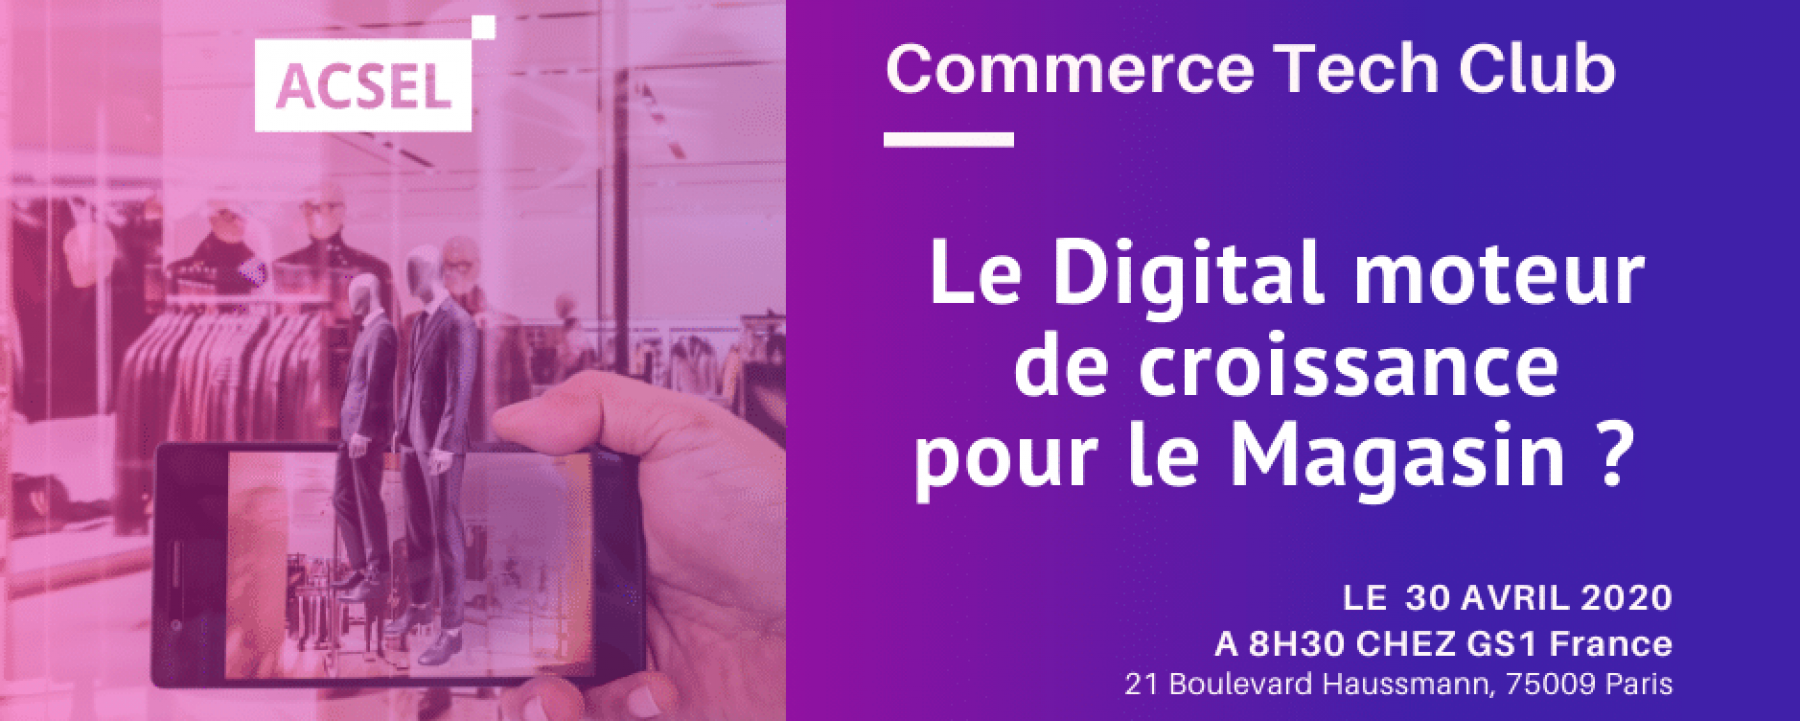 Événement le digital moteur de croissance pour le magasin ?, organisé par l'ACSEL, le 30 avril 2020, chez GS1 France